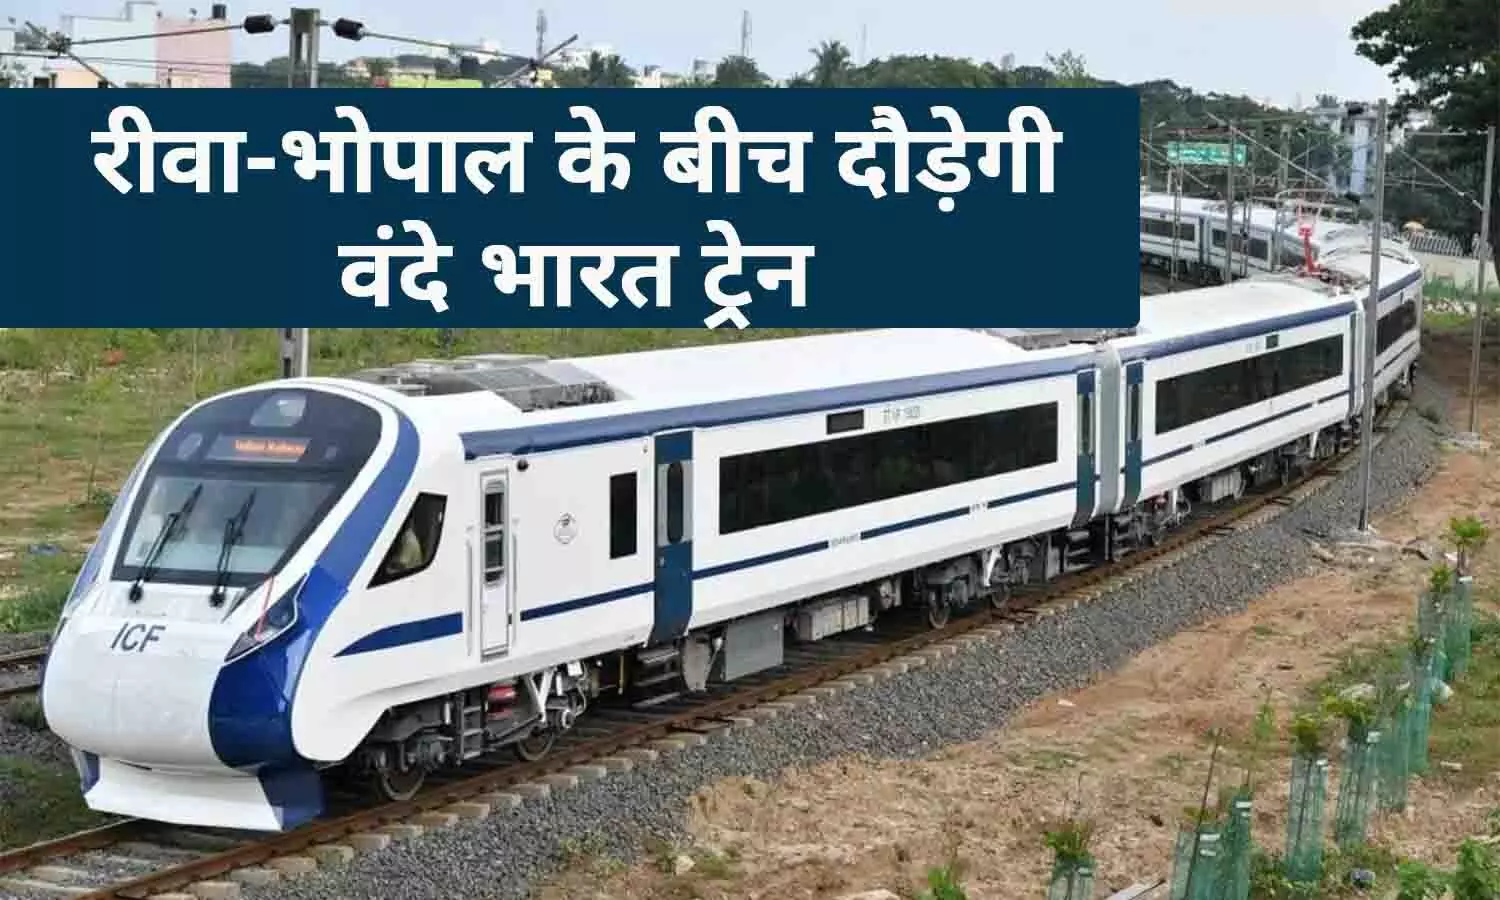 एमपी की दूसरी वंदे भारत ट्रेन: रीवा-भोपाल के बीच चलेगी वंदे भारत एक्सप्रेस ट्रेन, भाजपा नेता गौरव तिवारी ने की थी पहल